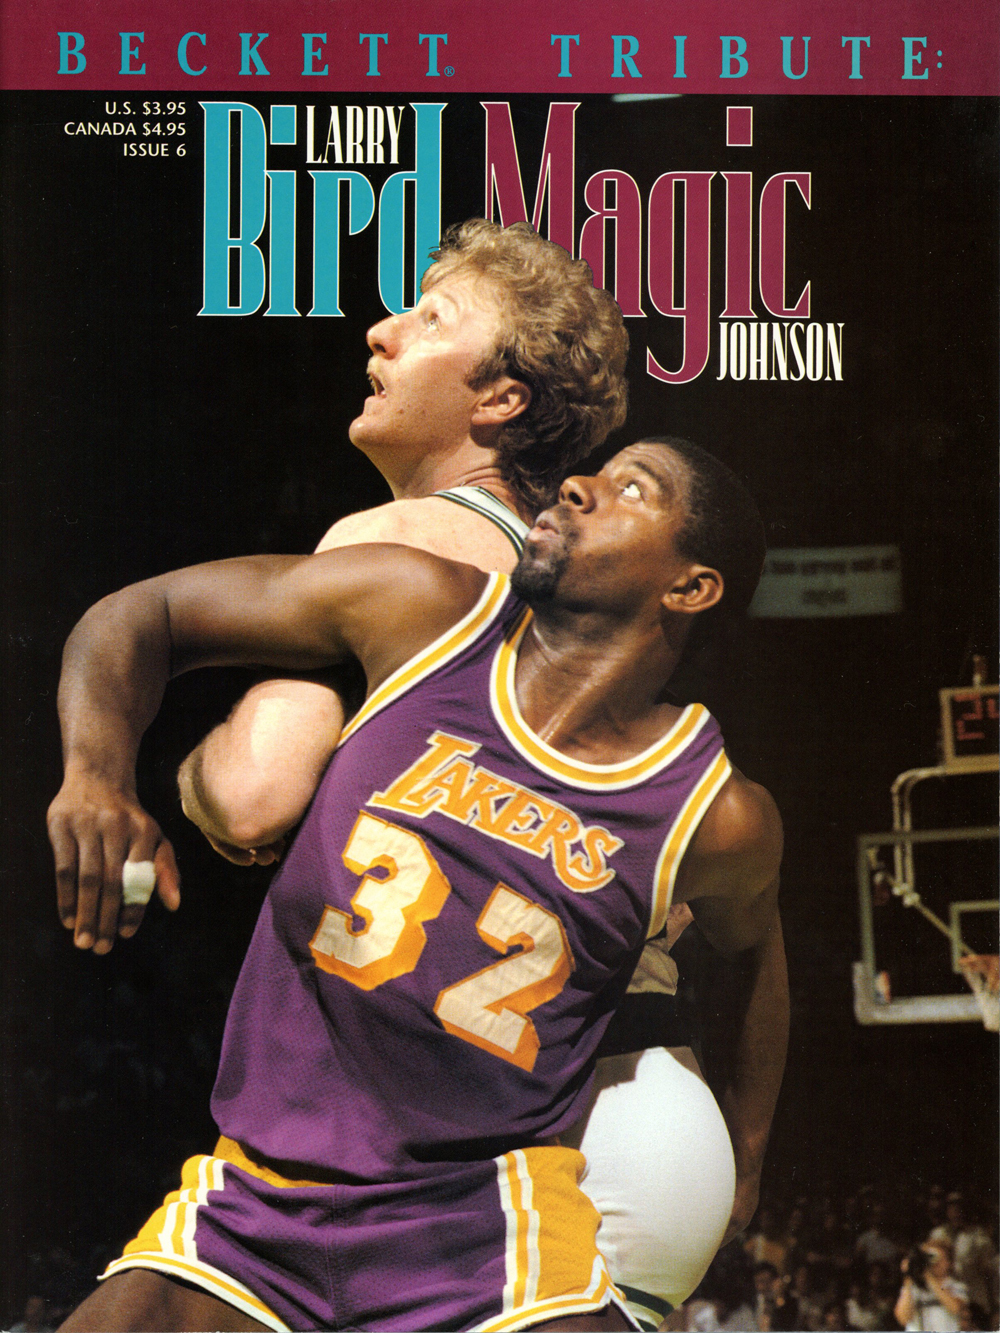 1994 Beckett Tribute Magazine Larry Bird & Magic Johnson Cover